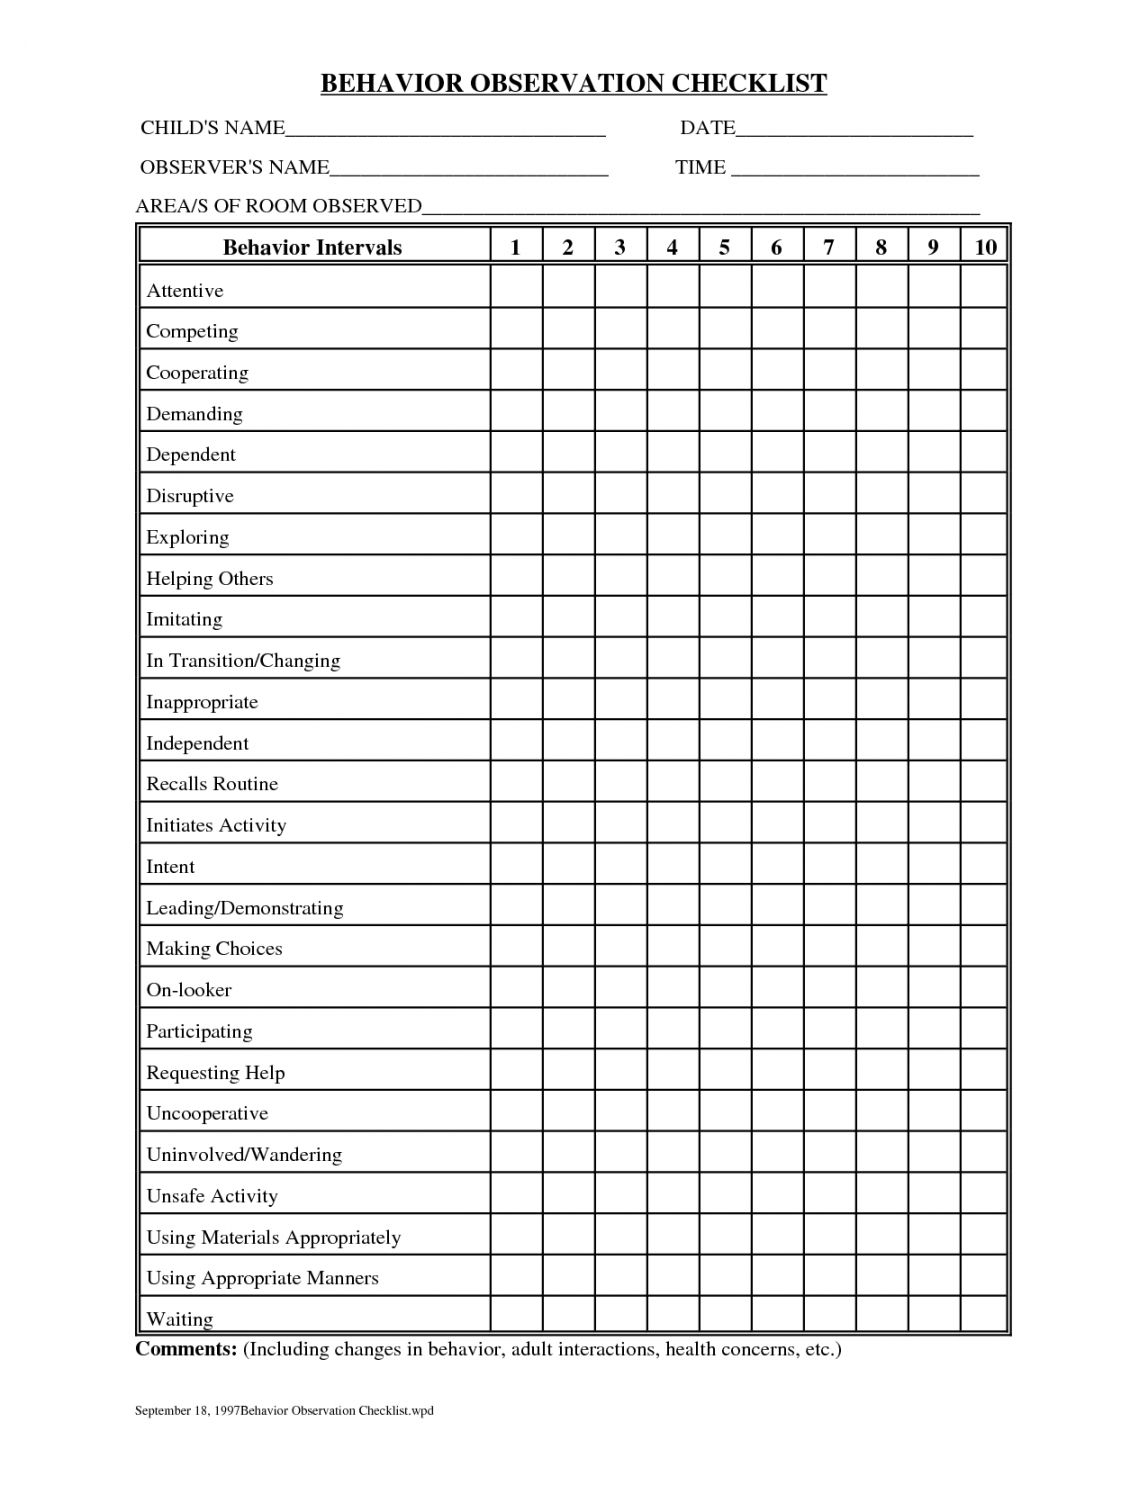 free safety behavior observation form template  miifotos com behavior observation checklist template samples